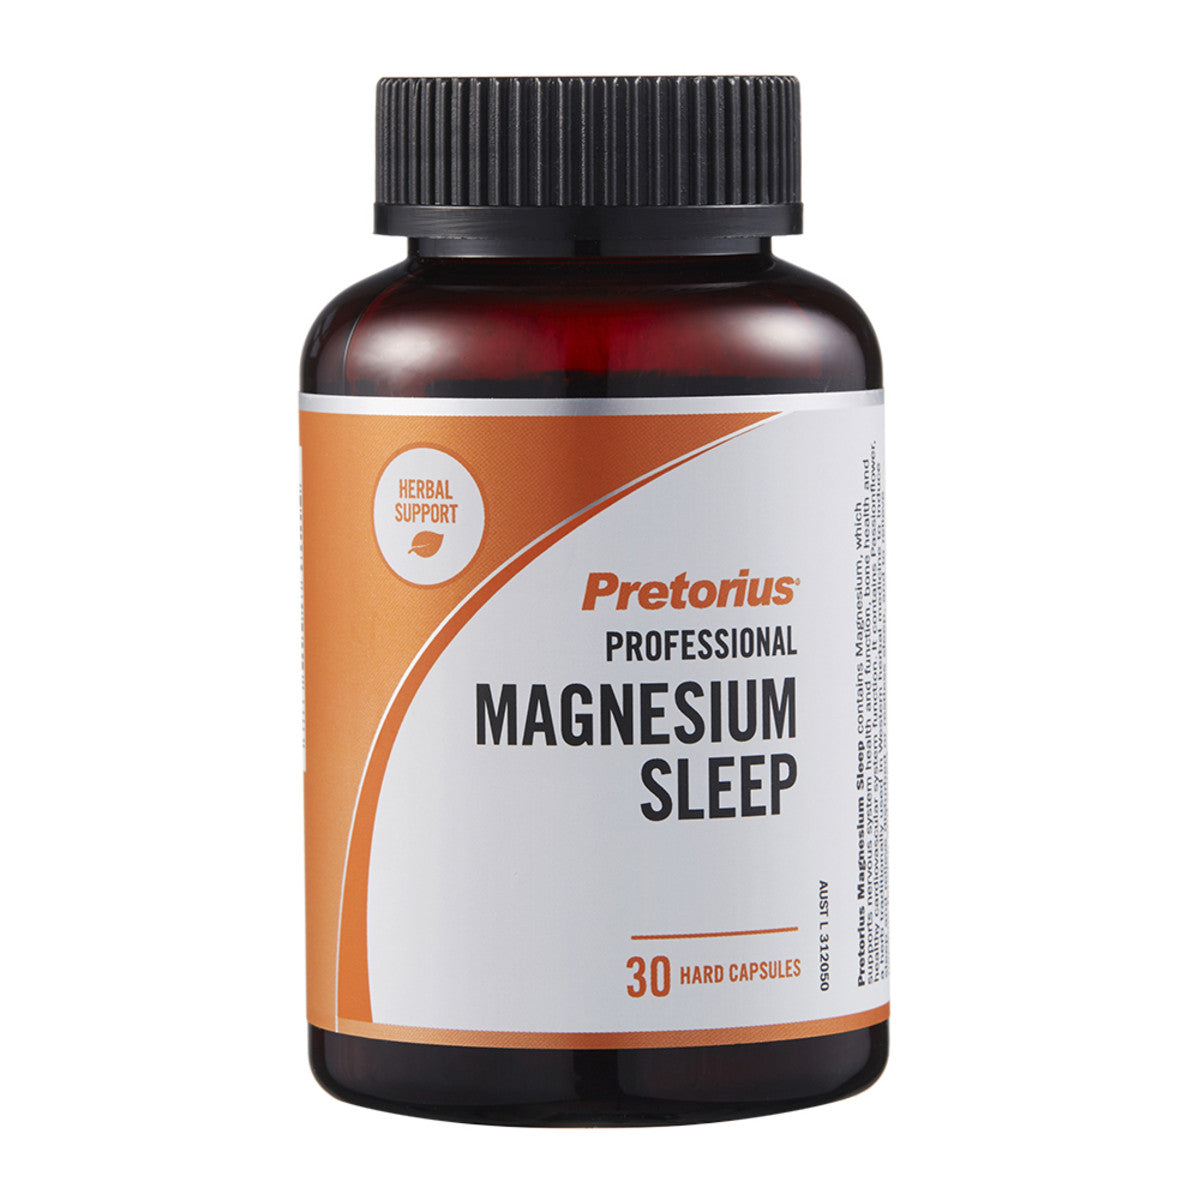 Pretorius - Magnesium Sleep